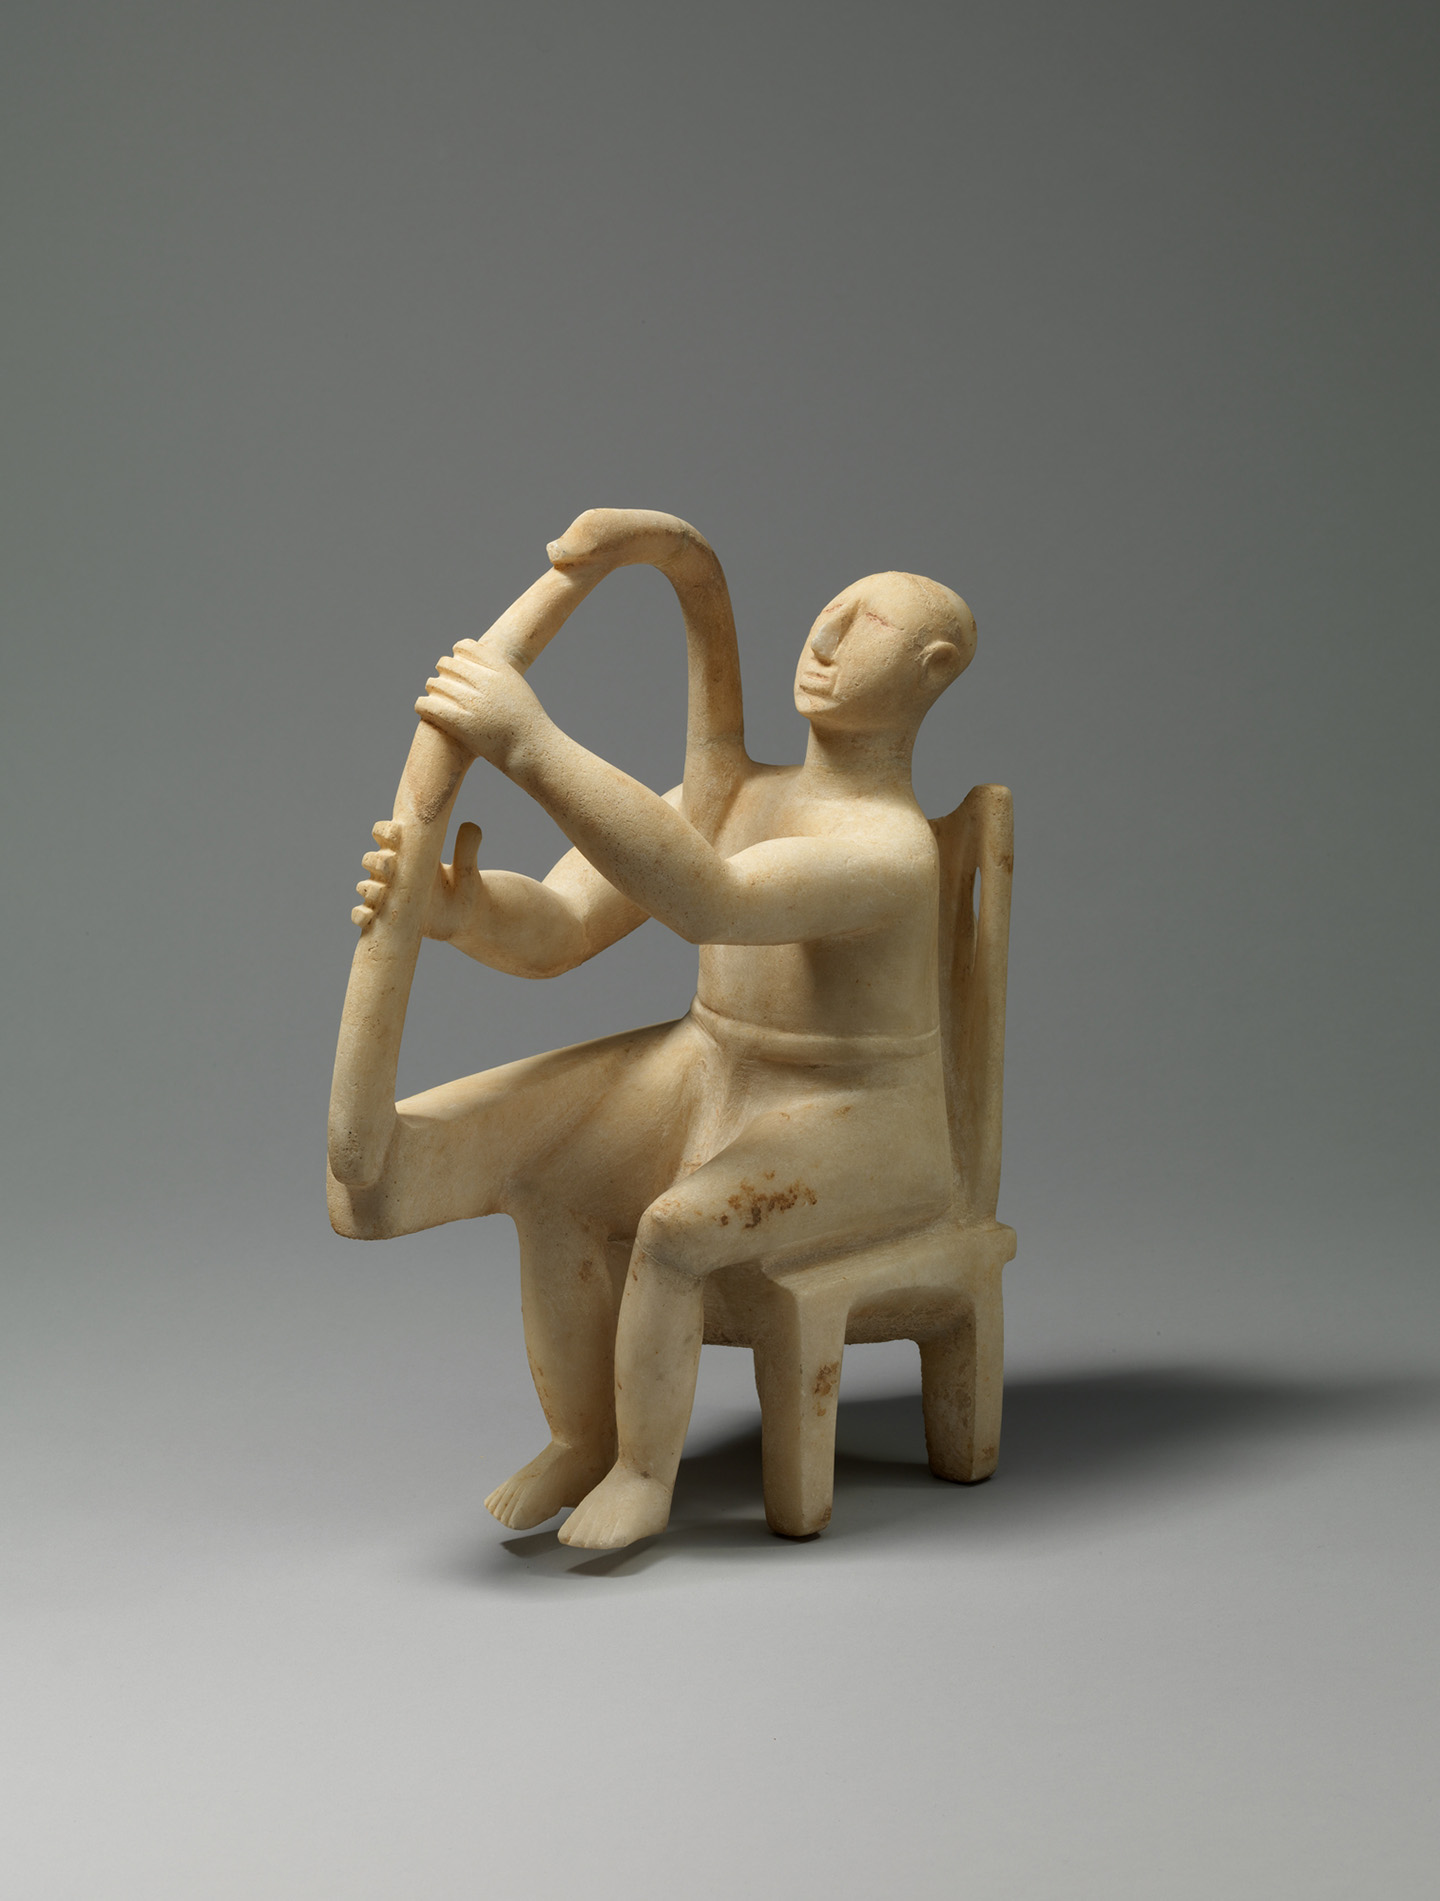 Bức tượng ‘Người chơi hạc cầm ngồi bằng đá cẩm thạch’, niên đại 2800–2700 trước Công Nguyên, thuộc nền văn minh Cyclades. Chất liệu: Đá cẩm thạch. Viện Bảo tàng Nghệ thuật Metropolitan, thành phố New York. (Ảnh: Tài sản công)